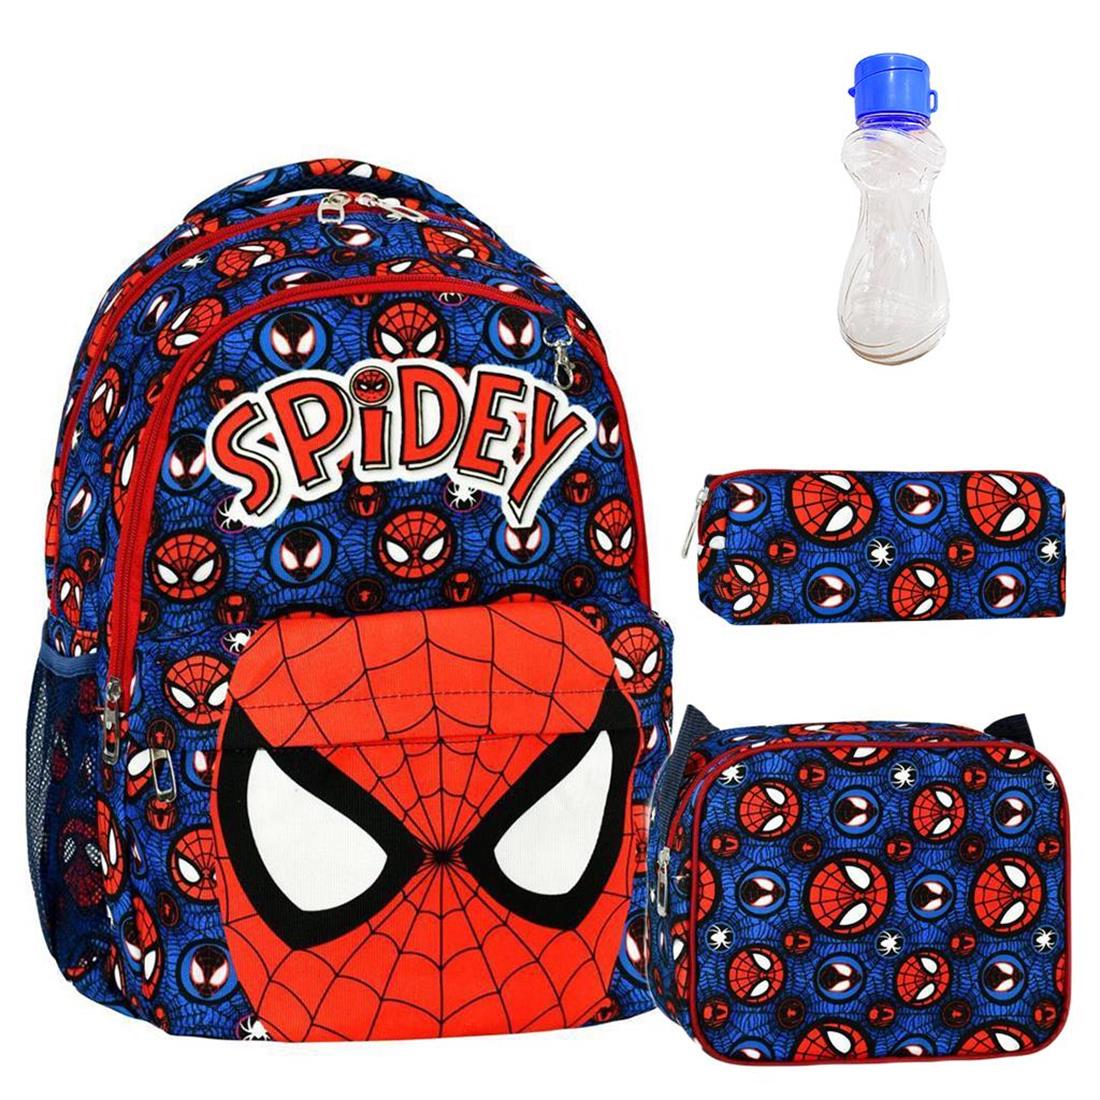 Spidey Çanta + Beslenme + Suluk - Okul Çantası - Spiderman Erkek Çocuk  Çantası - İlkokul Çanta